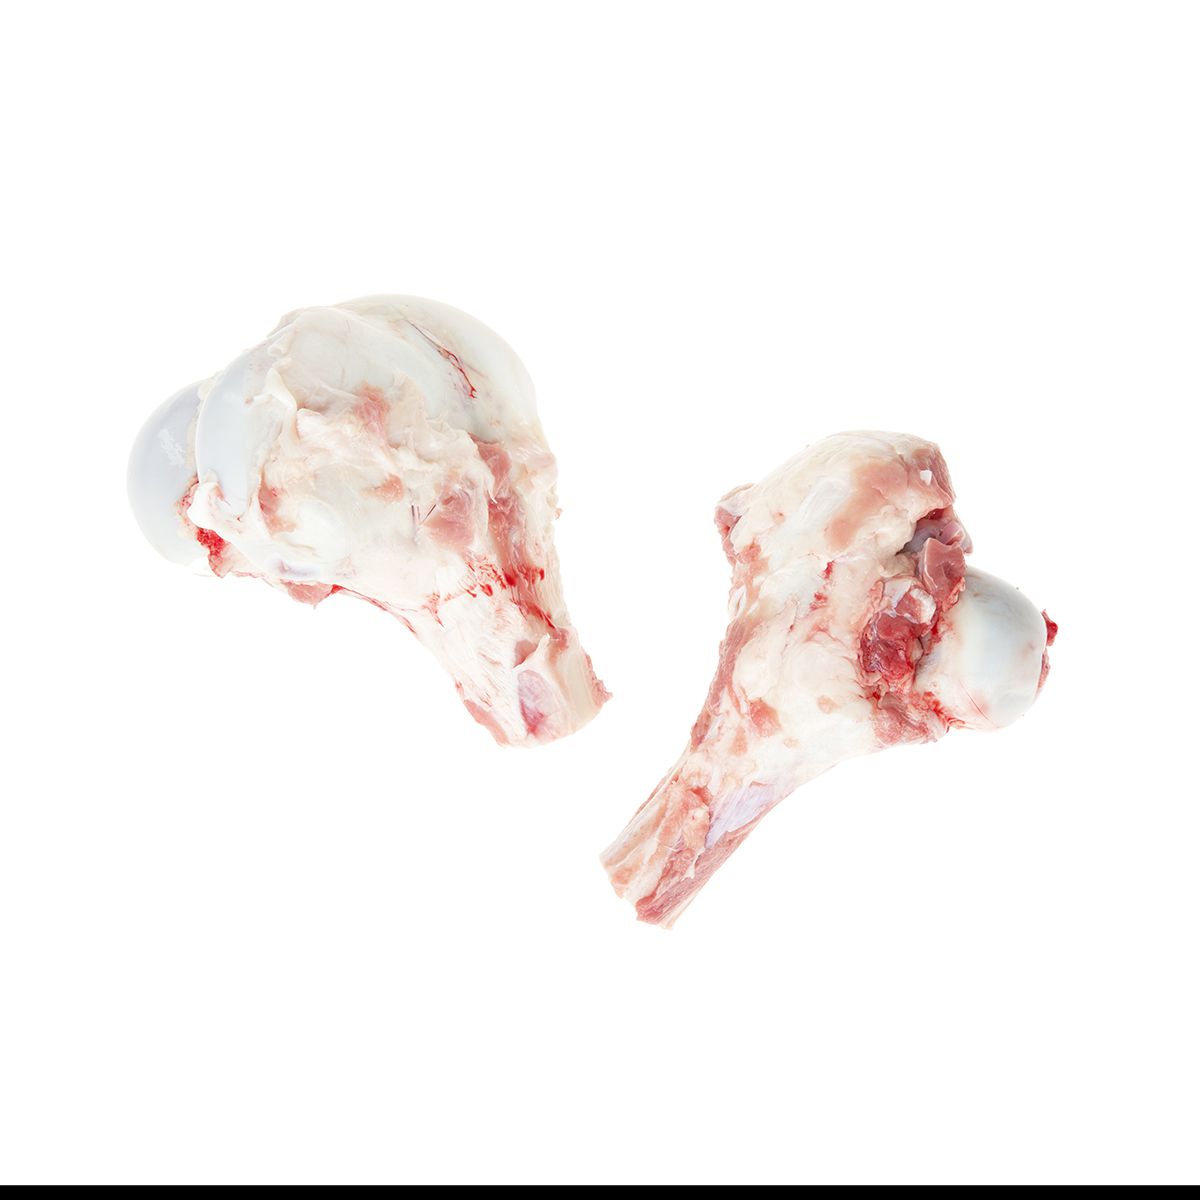 Atlantic Veal & Lamb Frozen Veal Marrow Bones